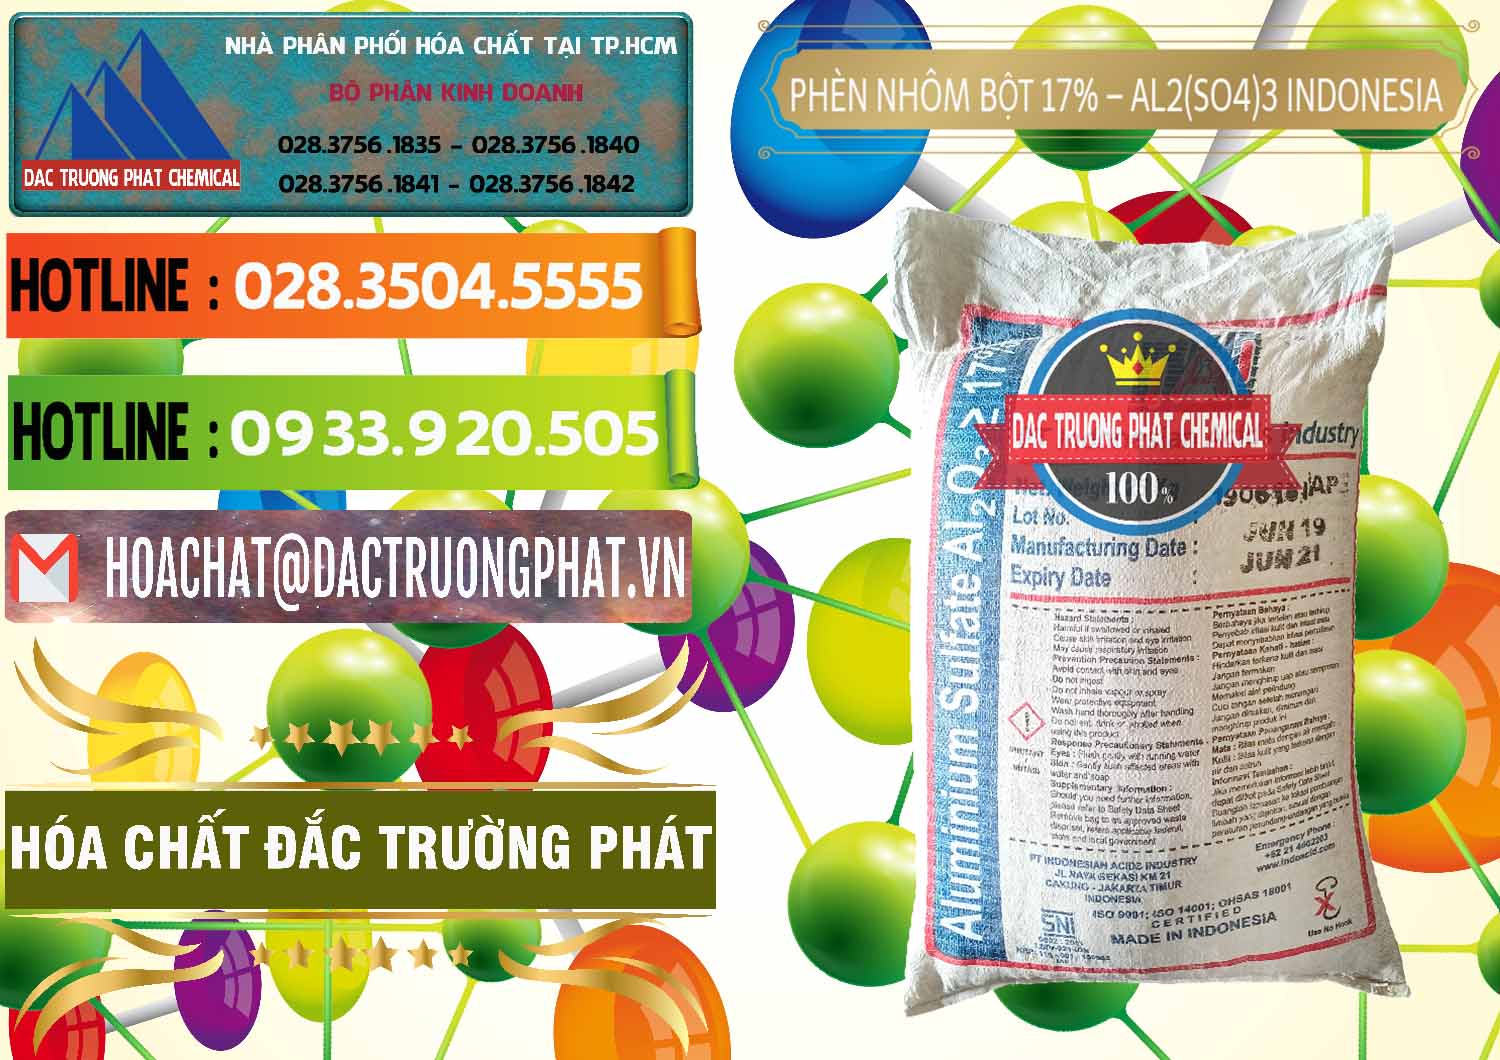 Nơi chuyên cung cấp và bán Phèn Nhôm Bột - Al2(SO4)3 17% bao 25kg Indonesia - 0114 - Đơn vị kinh doanh và cung cấp hóa chất tại TP.HCM - cungcaphoachat.com.vn